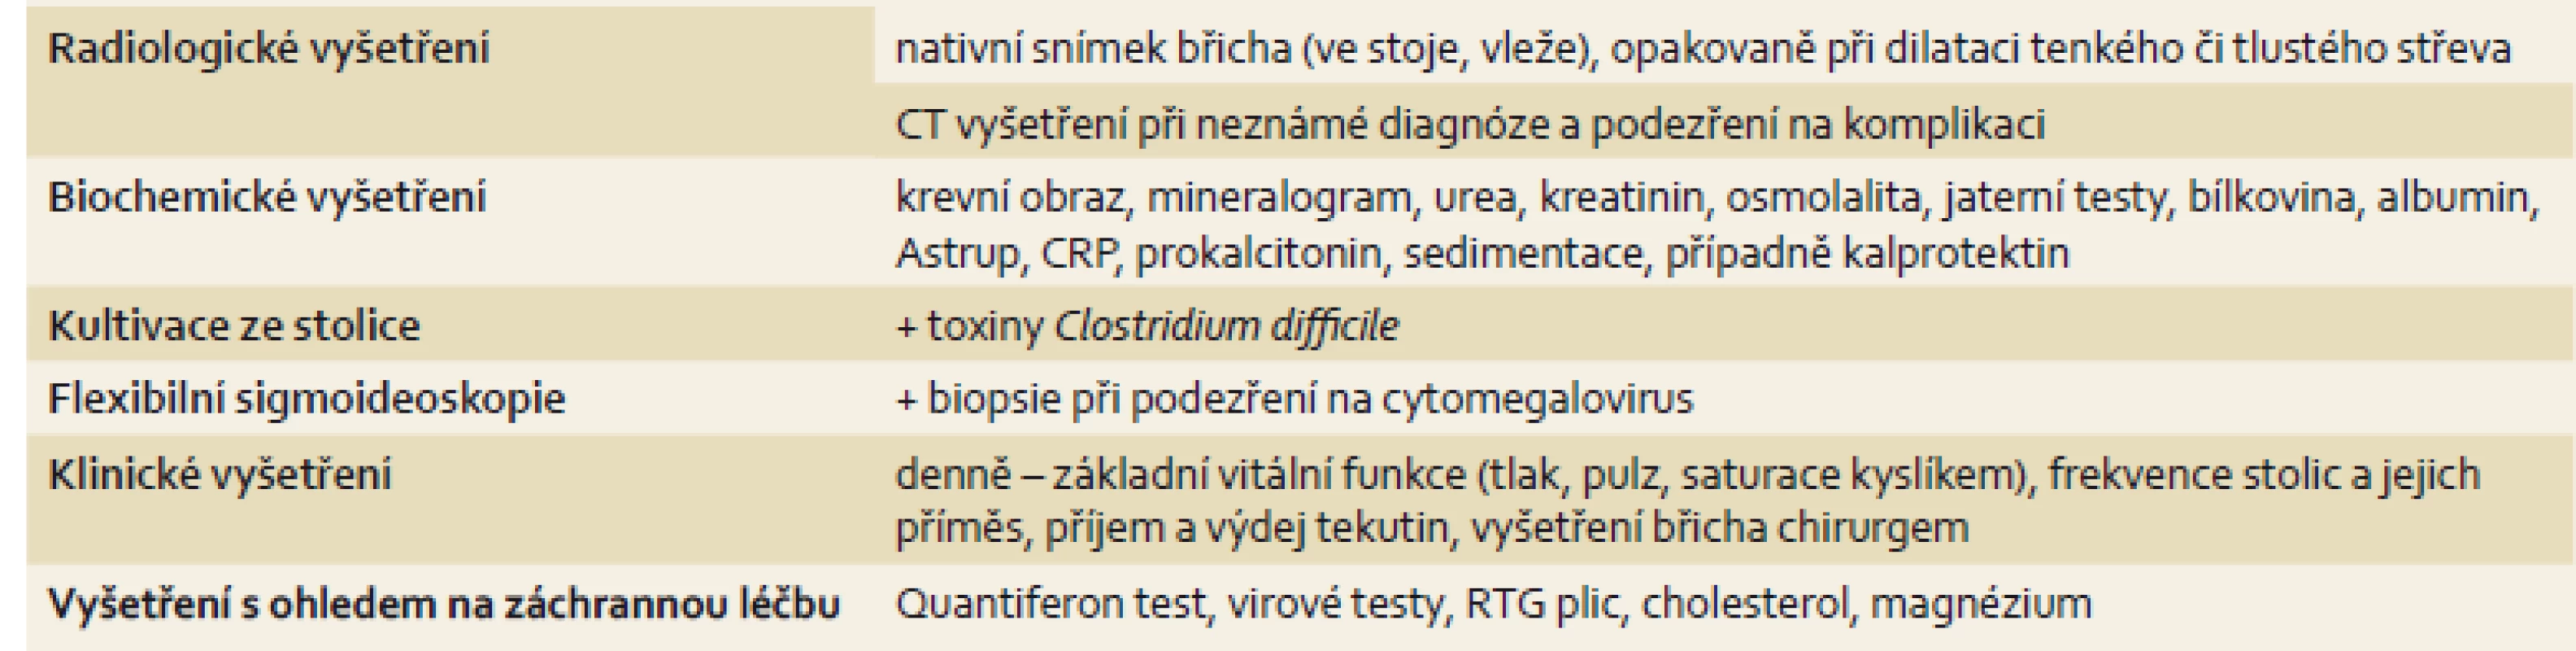 Vyšetření při akutní těžké ulcerózní kolitidě.
Tab. 2. Examination of acute severe ulcerative colitis.